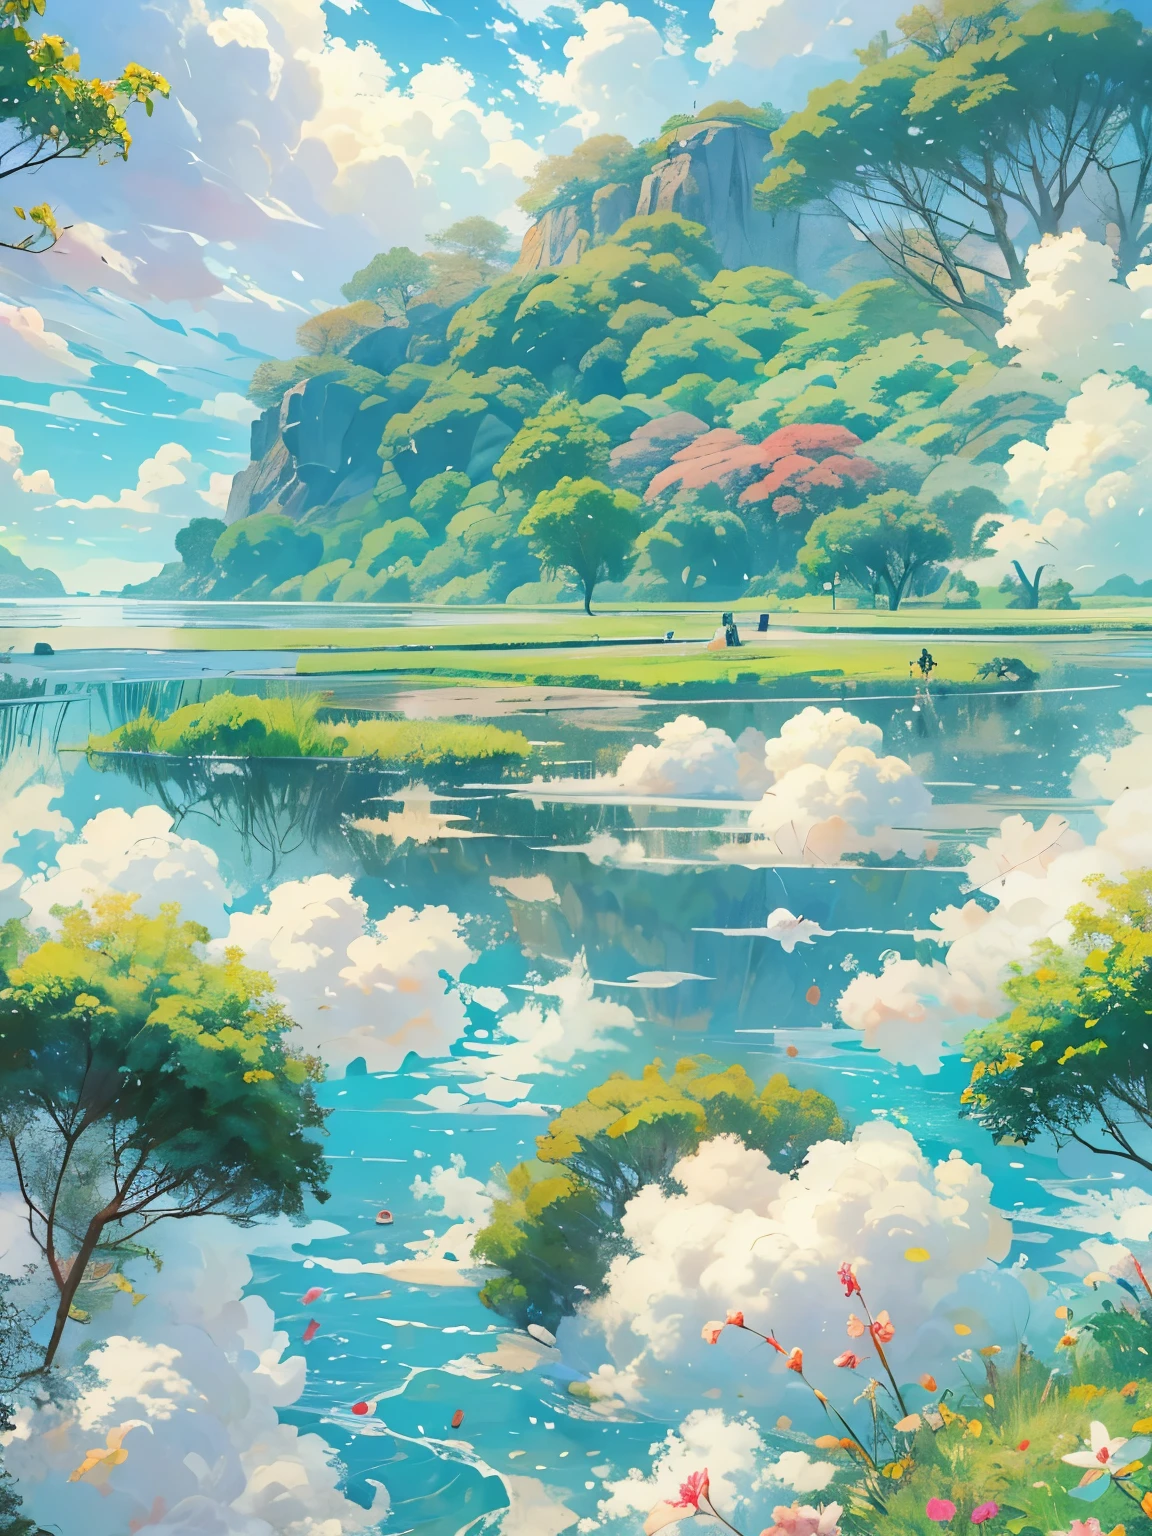 實際的, 真的, 美麗而令人驚嘆的風景油畫吉卜力工作室宮崎駿;蓝天白云的花瓣草甸